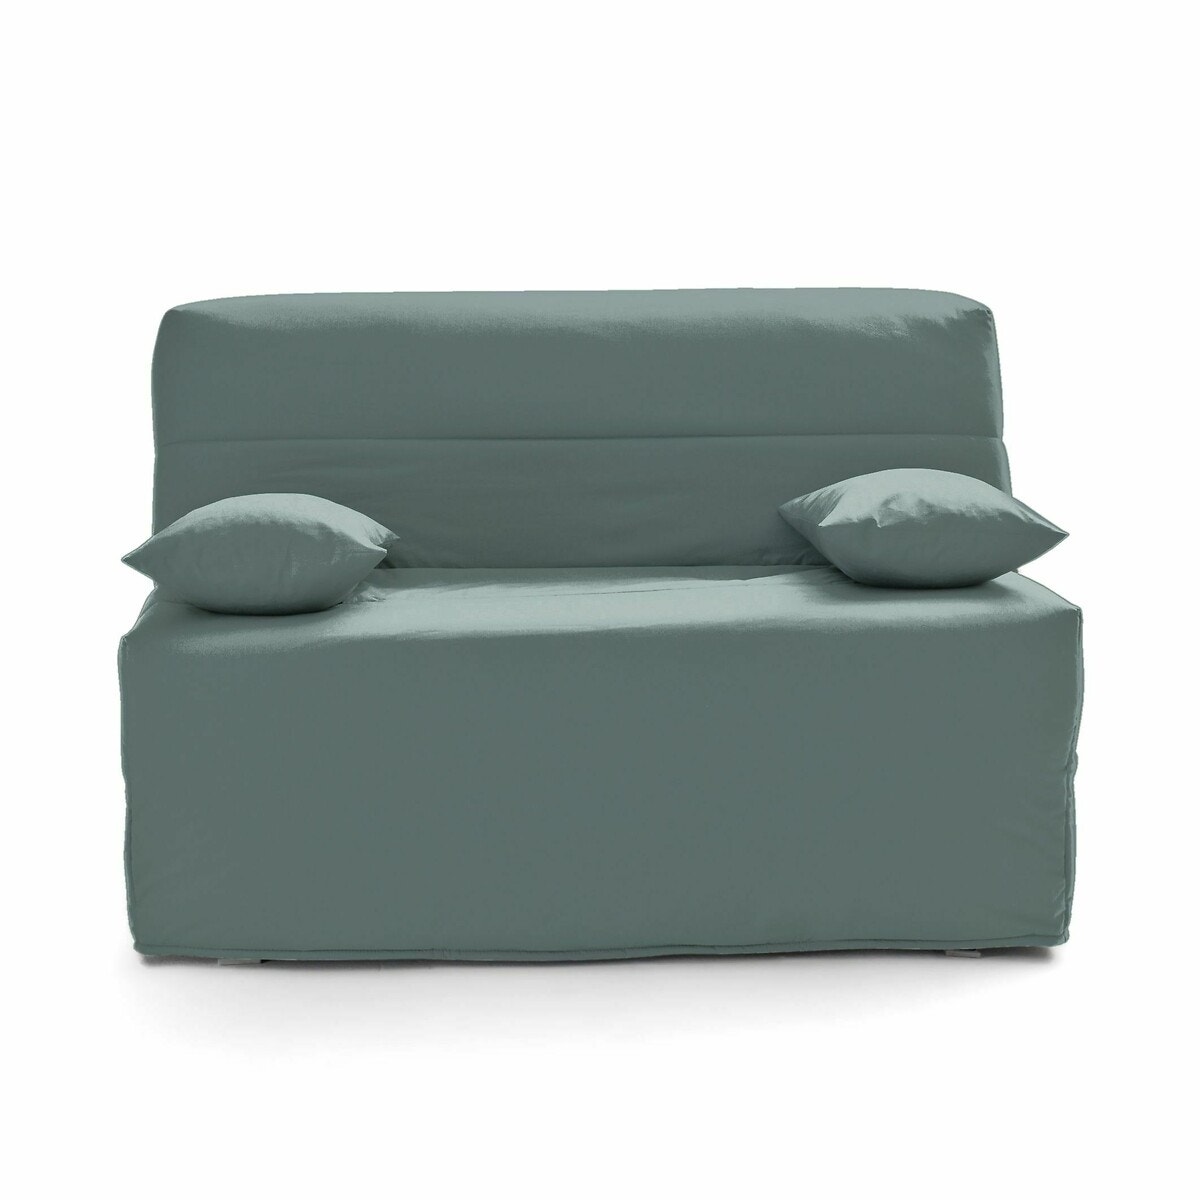 Πτυσσόμενος καναπές-κρεβάτι με αφρό Bultex 15 εκ.